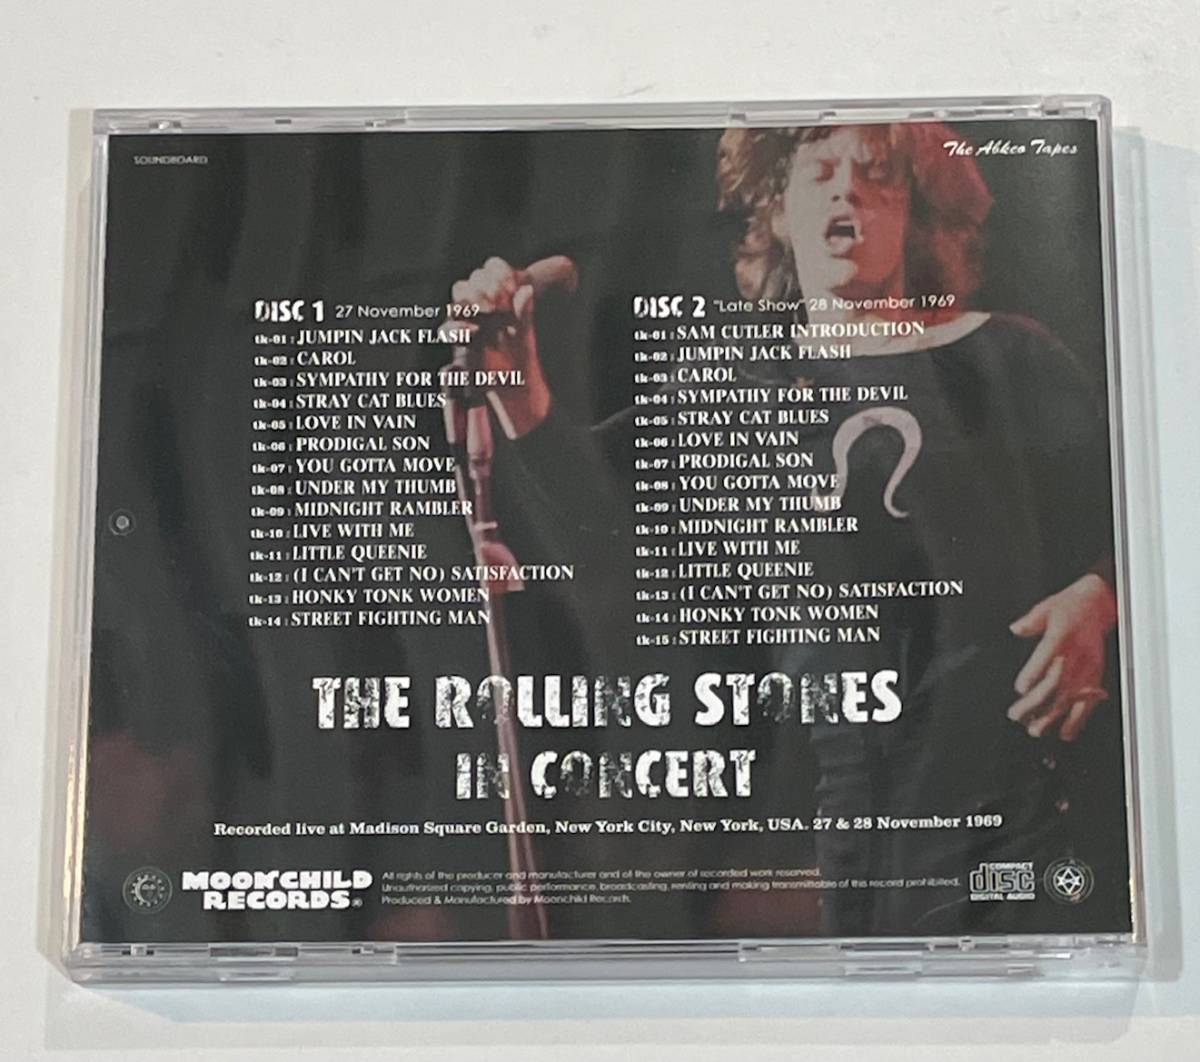 [プレス2CD] In Concert The Abkco Tapes [Moonchild] The Rolling Stones ローリング・ストーンズ 1969 Mick Taylor ミック・テイラー_画像2